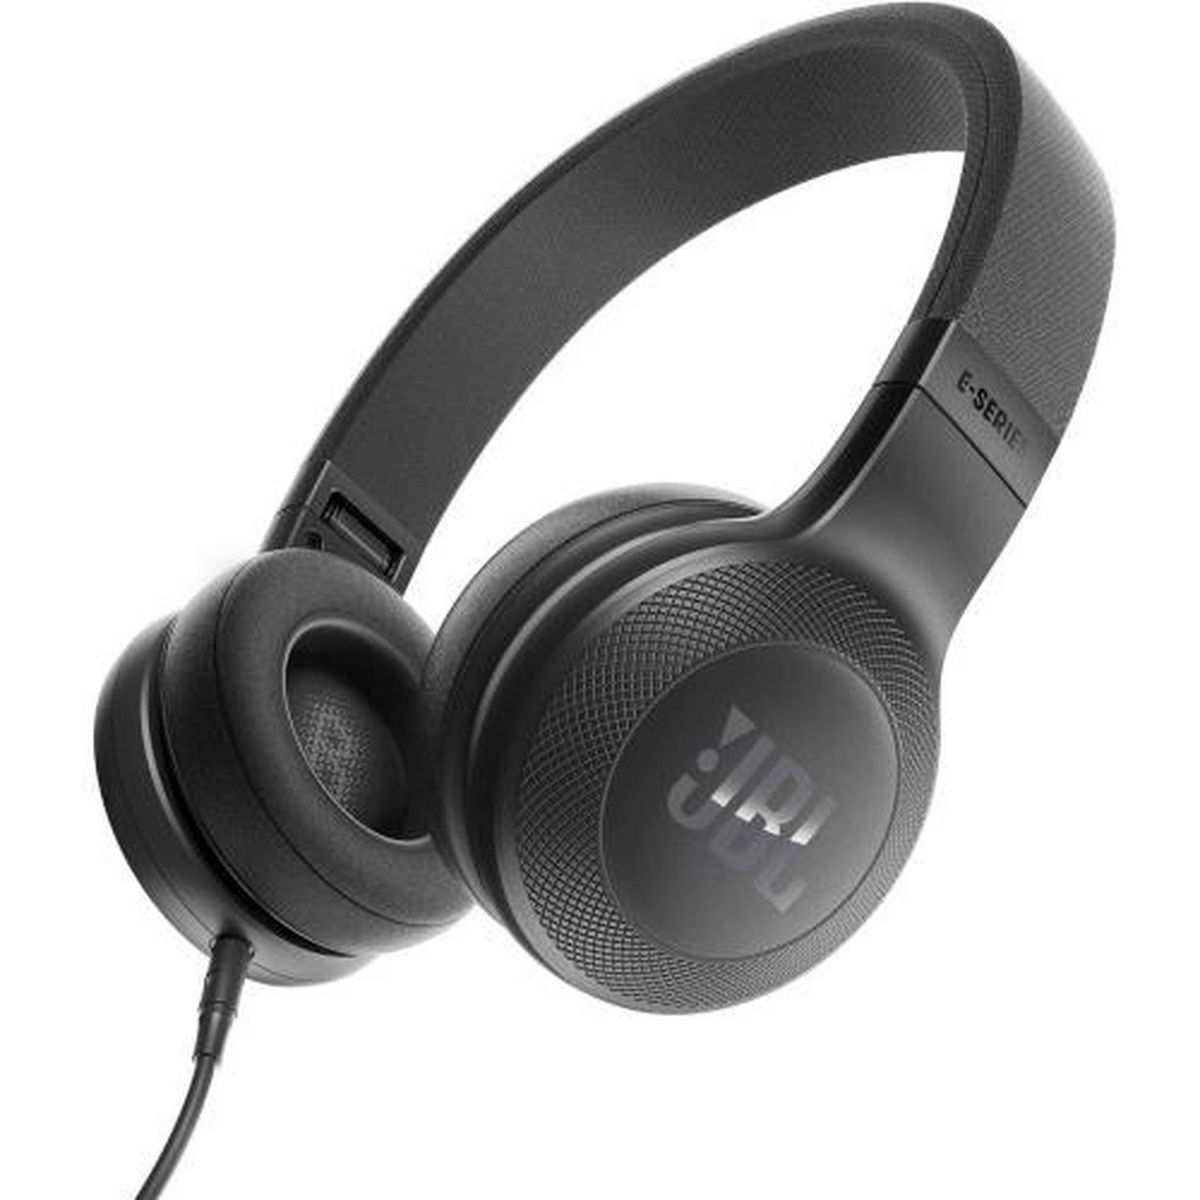 JBL Casque audio filaire - Noir - E35 pas cher 